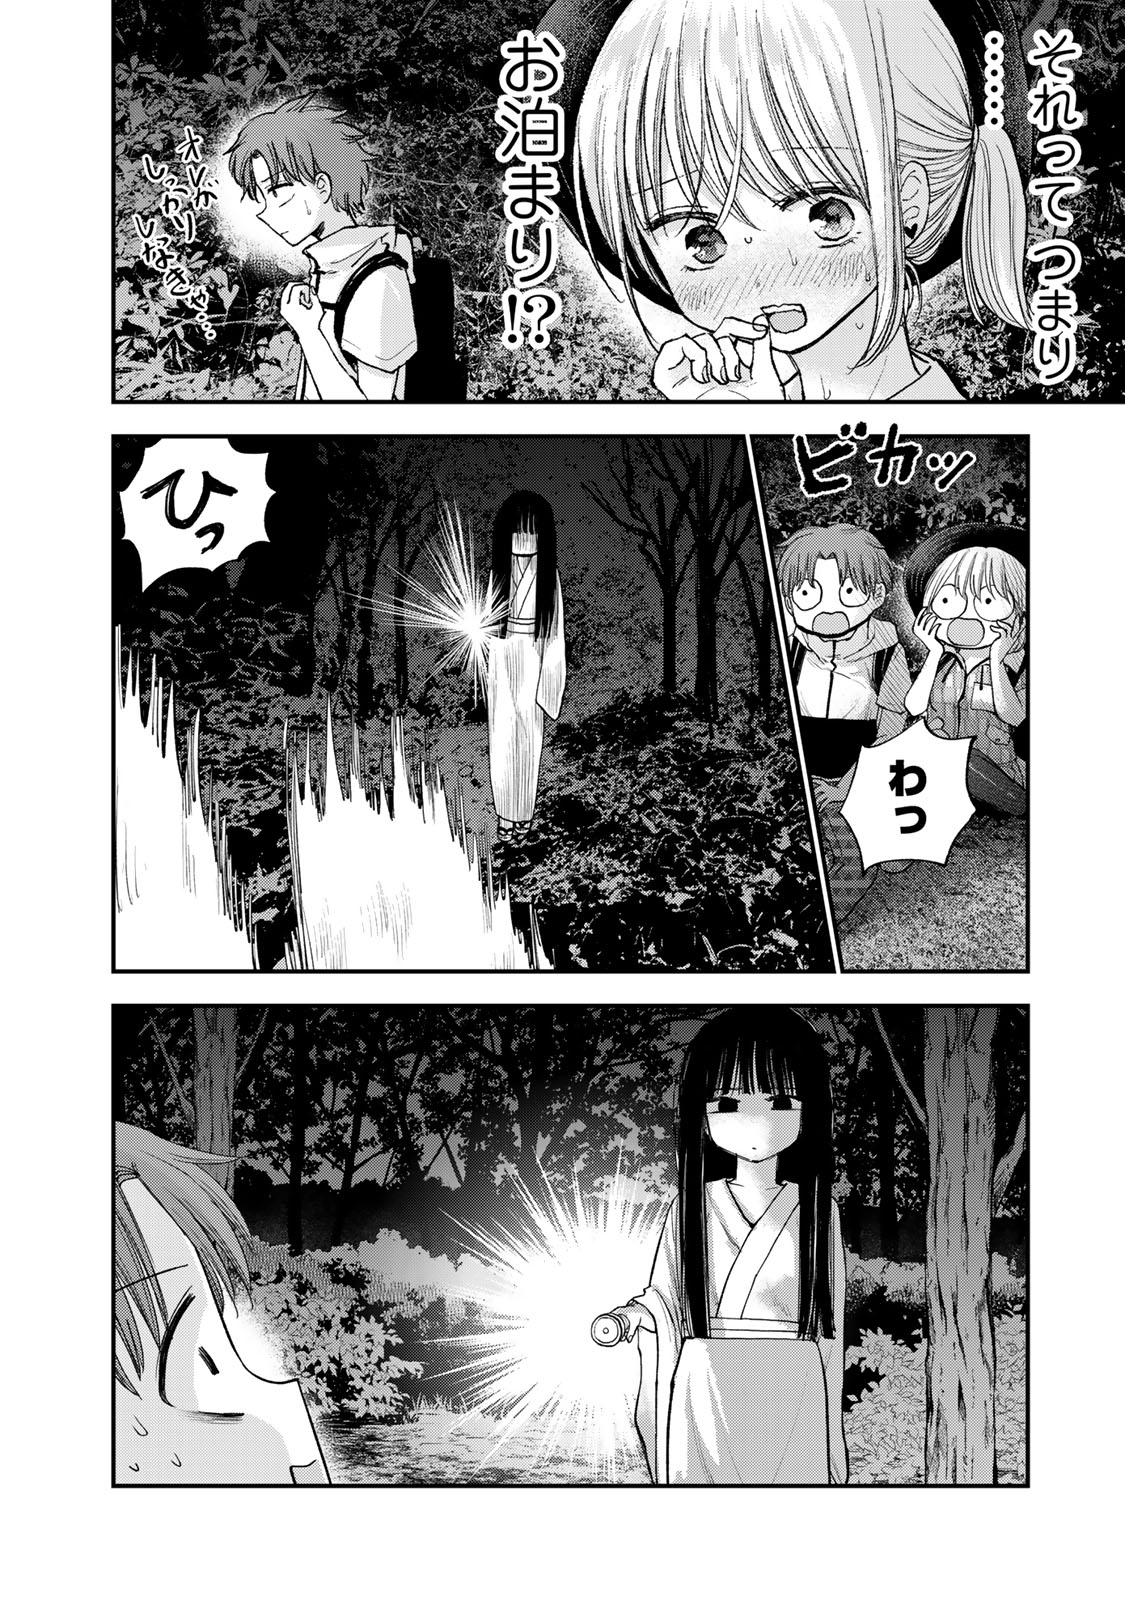 Occhoko Doji Onee-san - Chapter 34 - Page 2